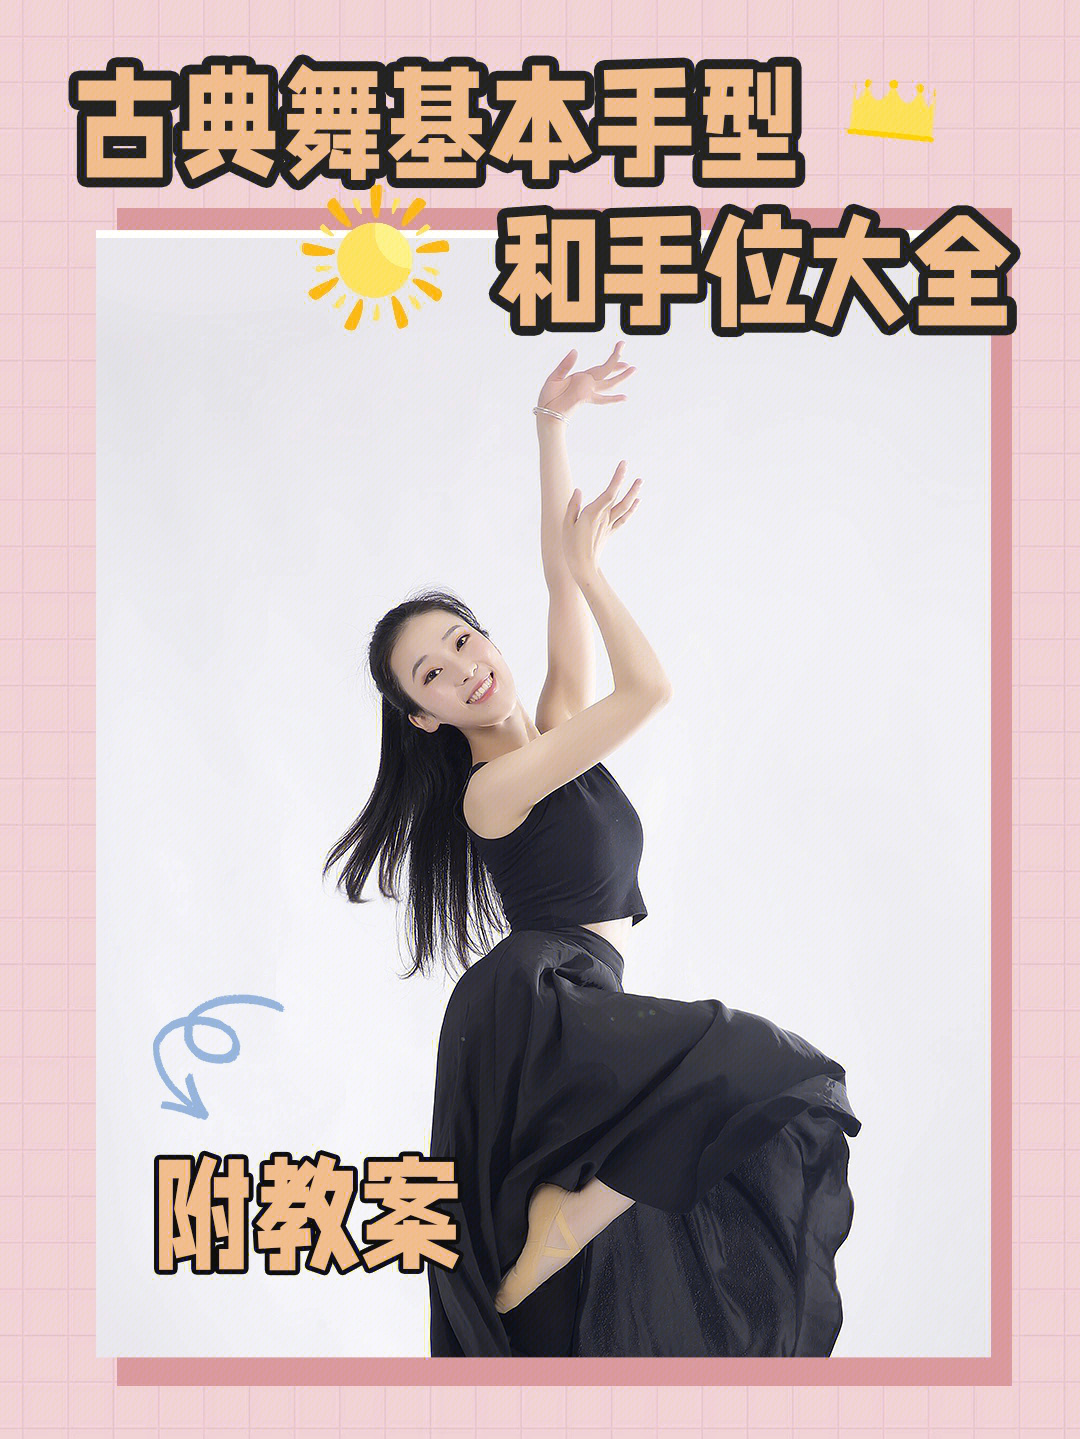 中国舞手位名称及图片图片